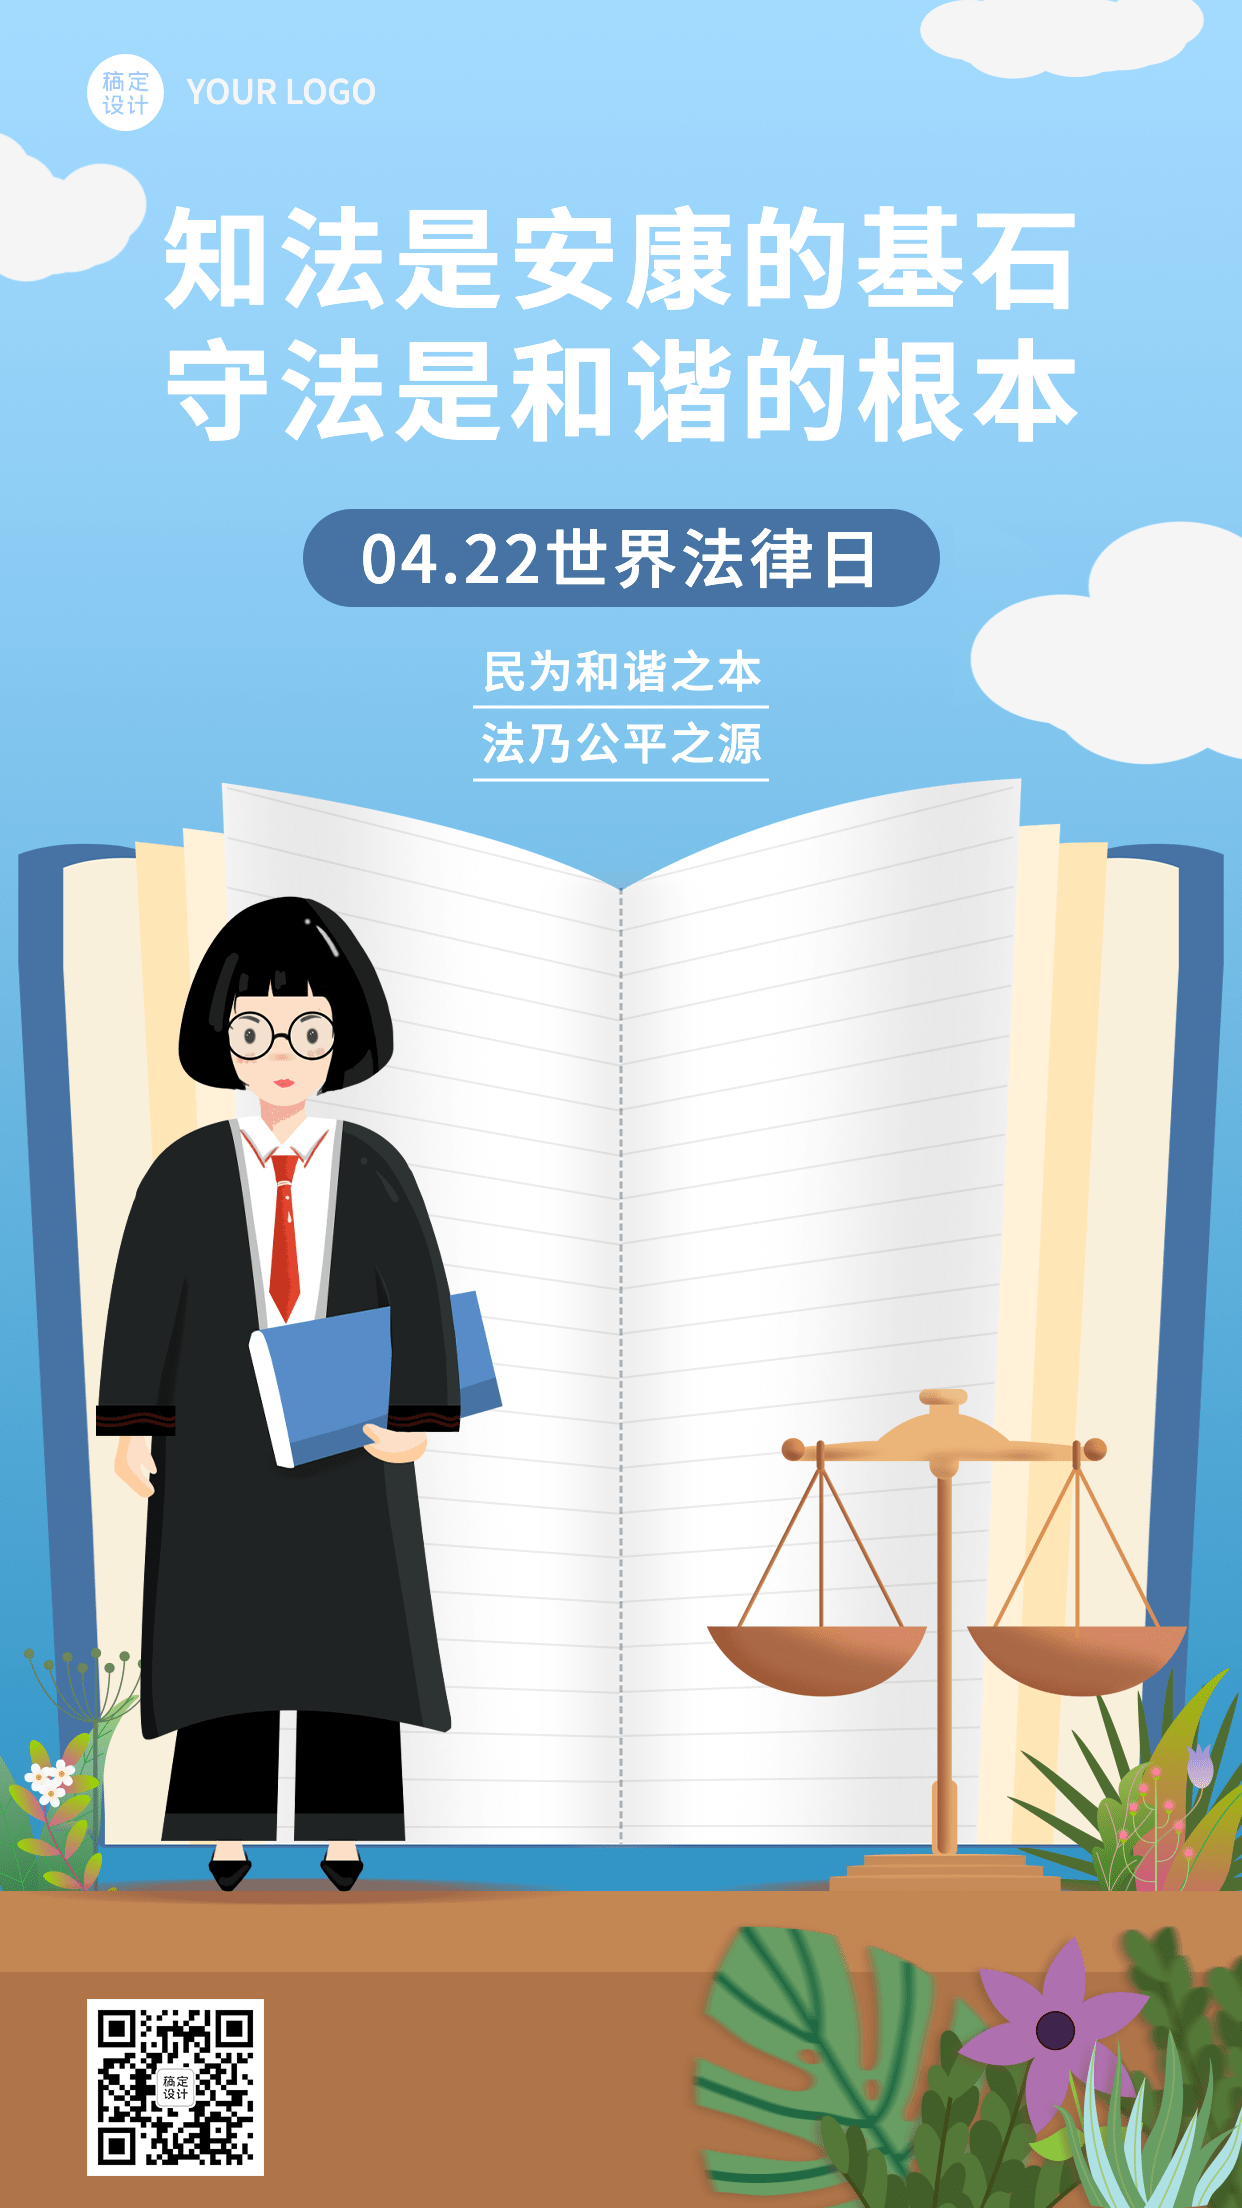 世界法律日节日宣传插画手机海报